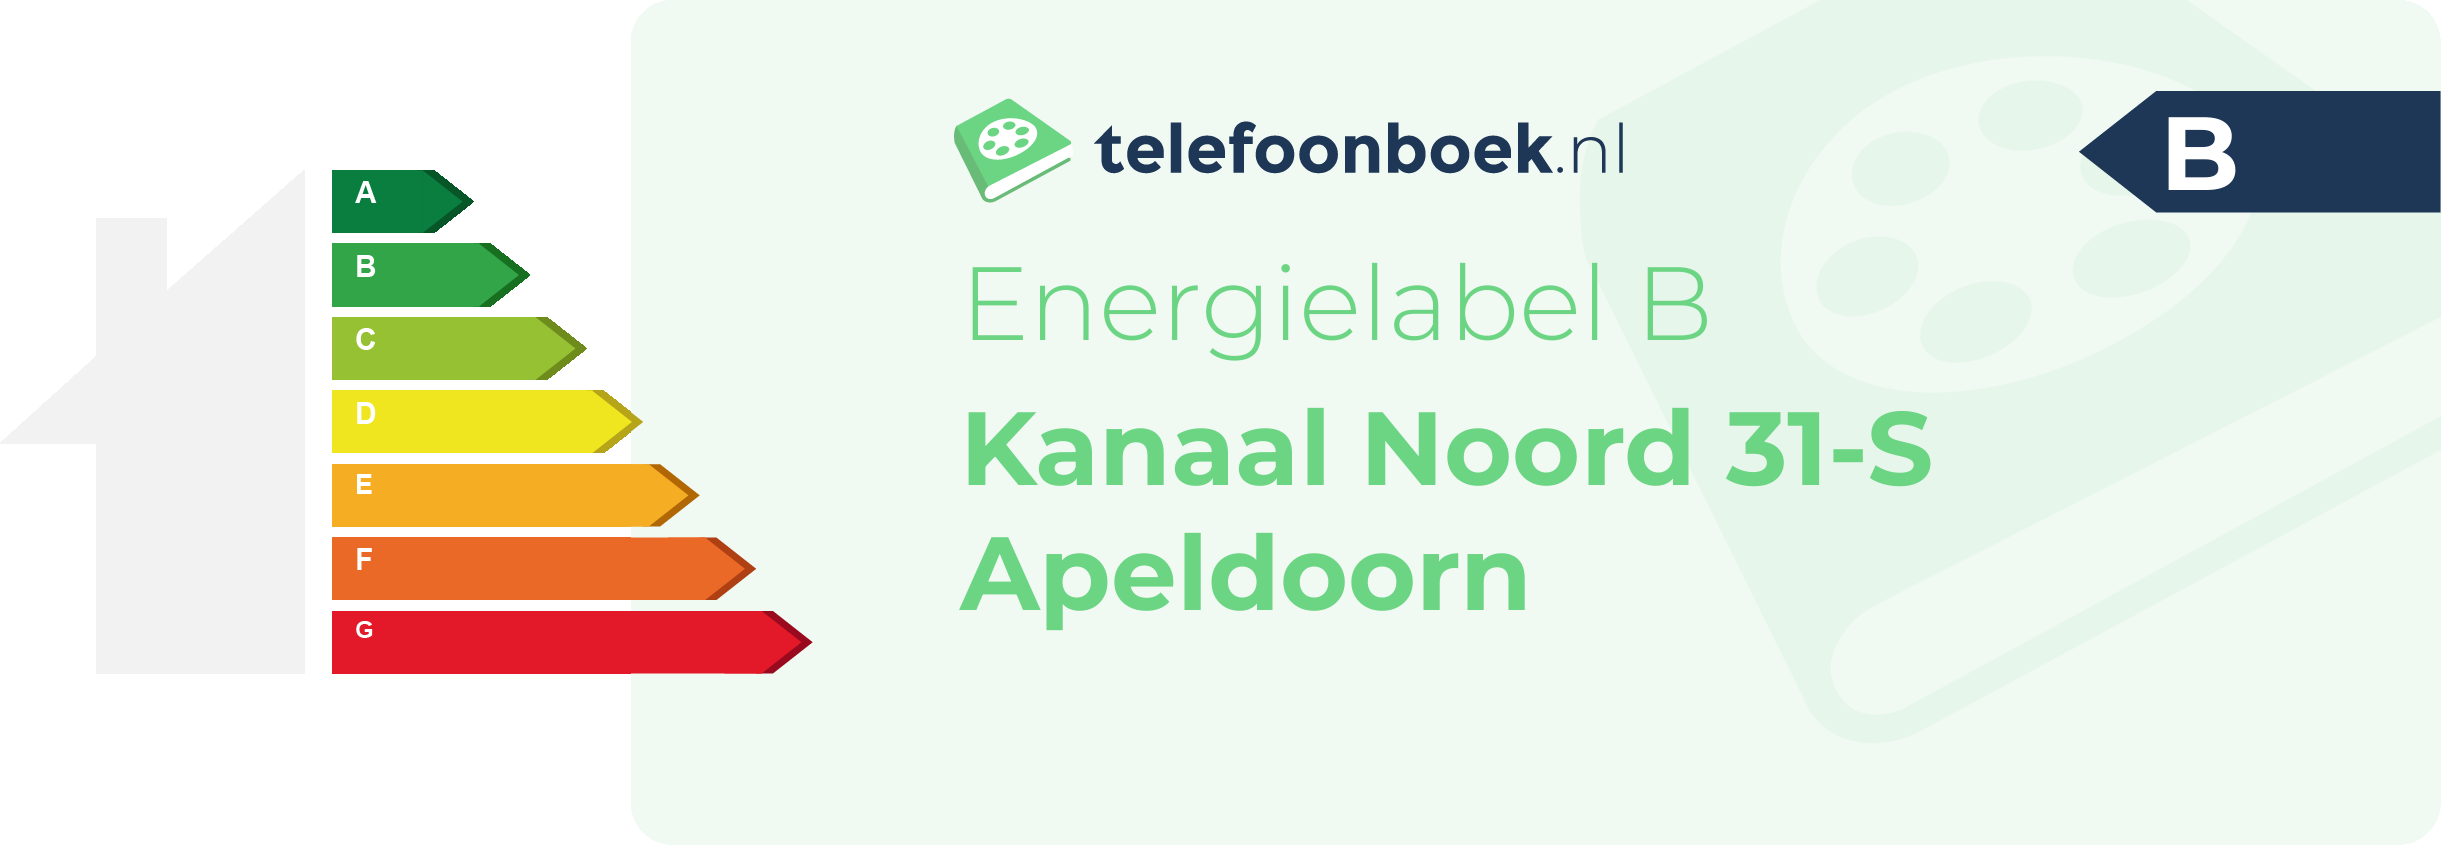 Energielabel Kanaal Noord 31-S Apeldoorn